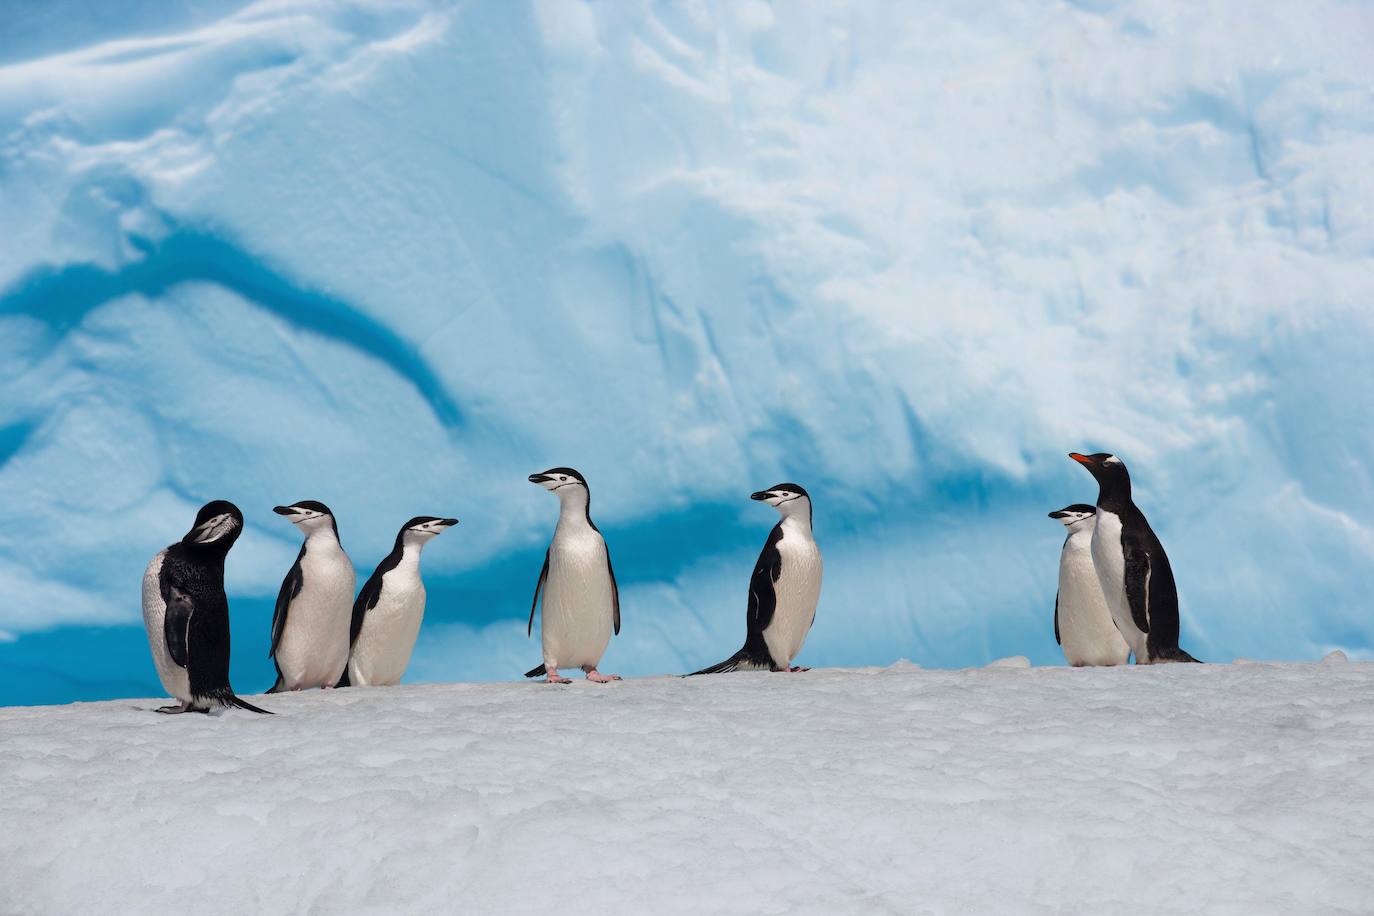 Esta fotografía del folleto tomada por John B. Weller y publicada por Pew Charitable Trusts muestra pingüinos vistos en la Antártida. El 25 de abril de 2017, los científicos instaron a más protecciones en la naturaleza virgen de esta zona para ayudar a detener el declive de las especies, con el cambio climático y la sobrepesca cobrando su precio. La convocatoria, que coincide con el Día Mundial del Pingüino, creada para promover la salud y la conservación de las icónicas aves marinas, se basa en un acuerdo histórico alcanzado en Australia en octubre pasado para crear la reserva marina más grande del mundo.